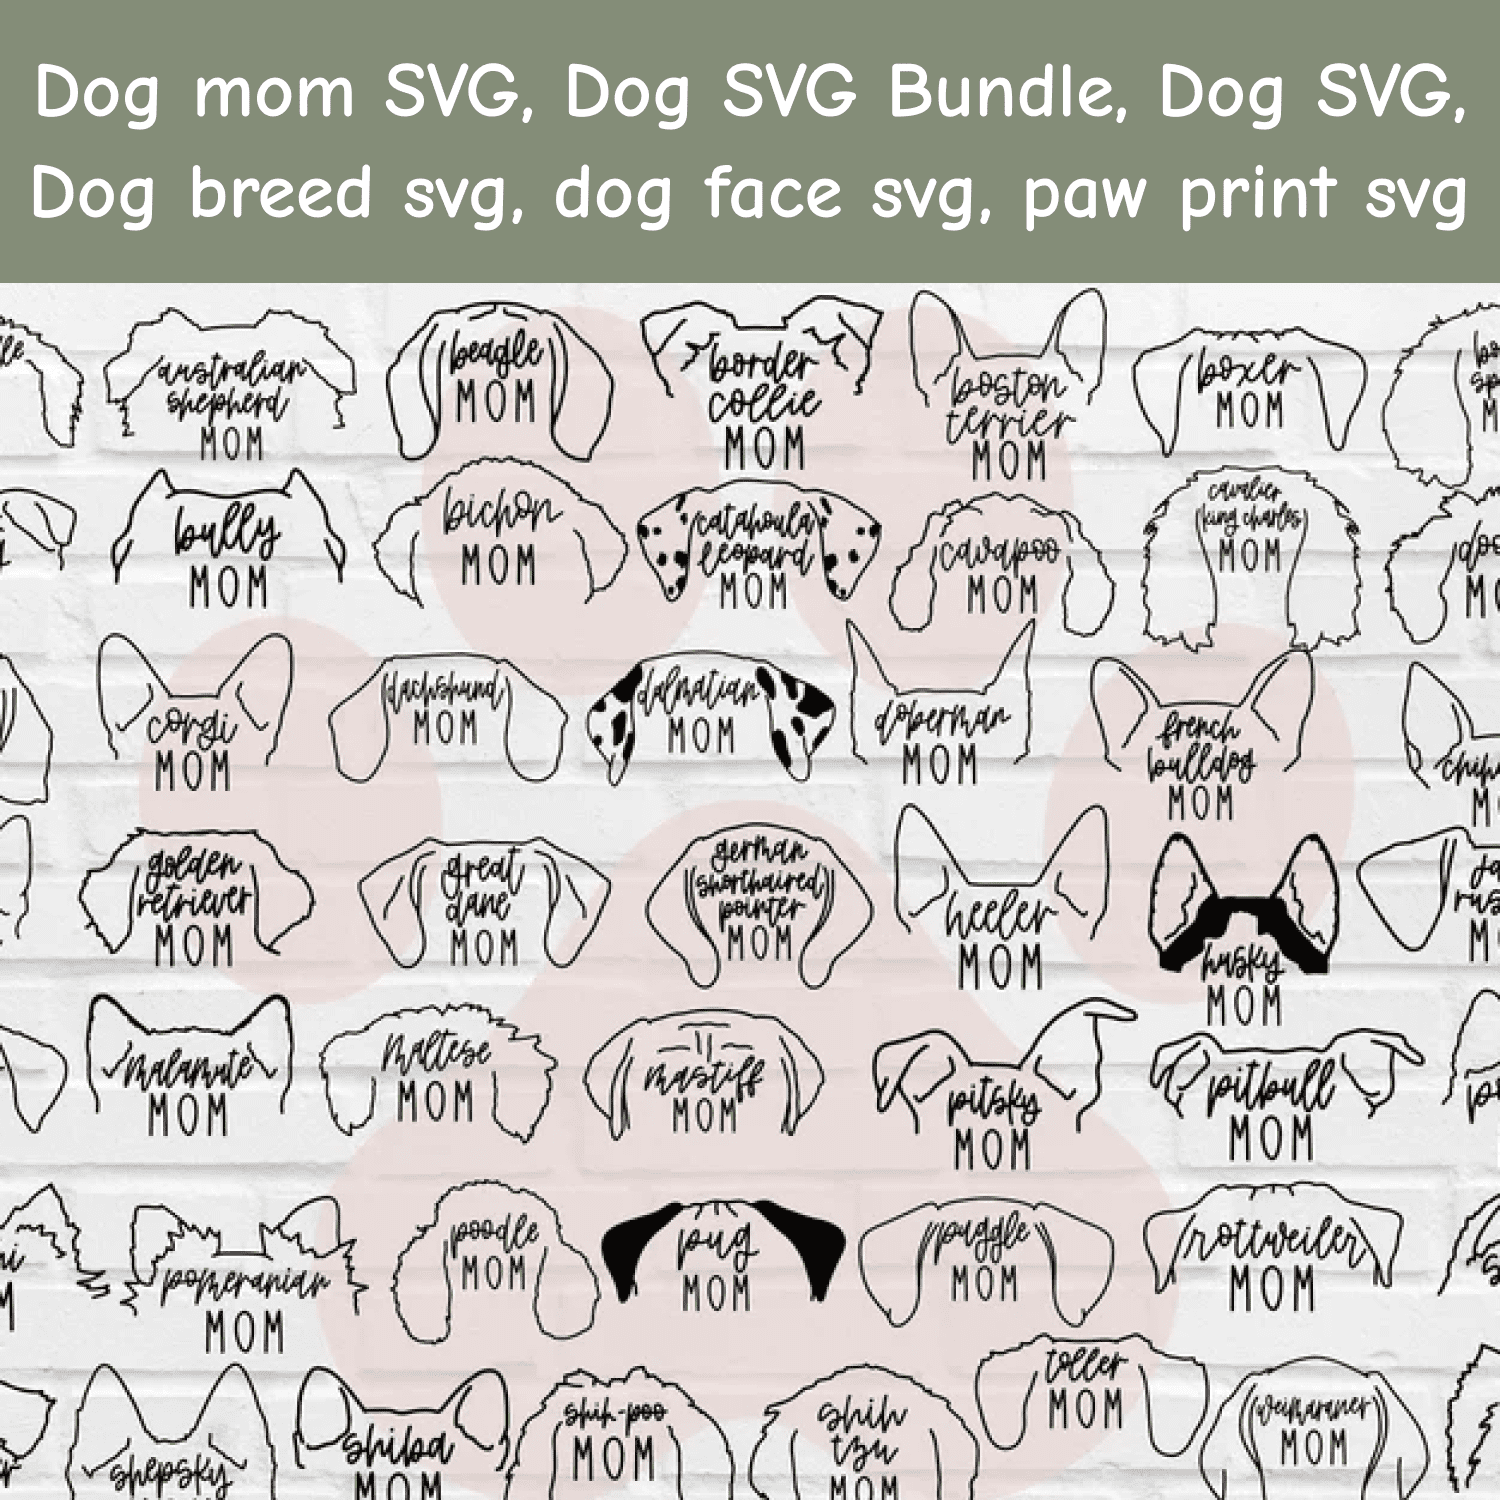 Dog mom SVG main cover.